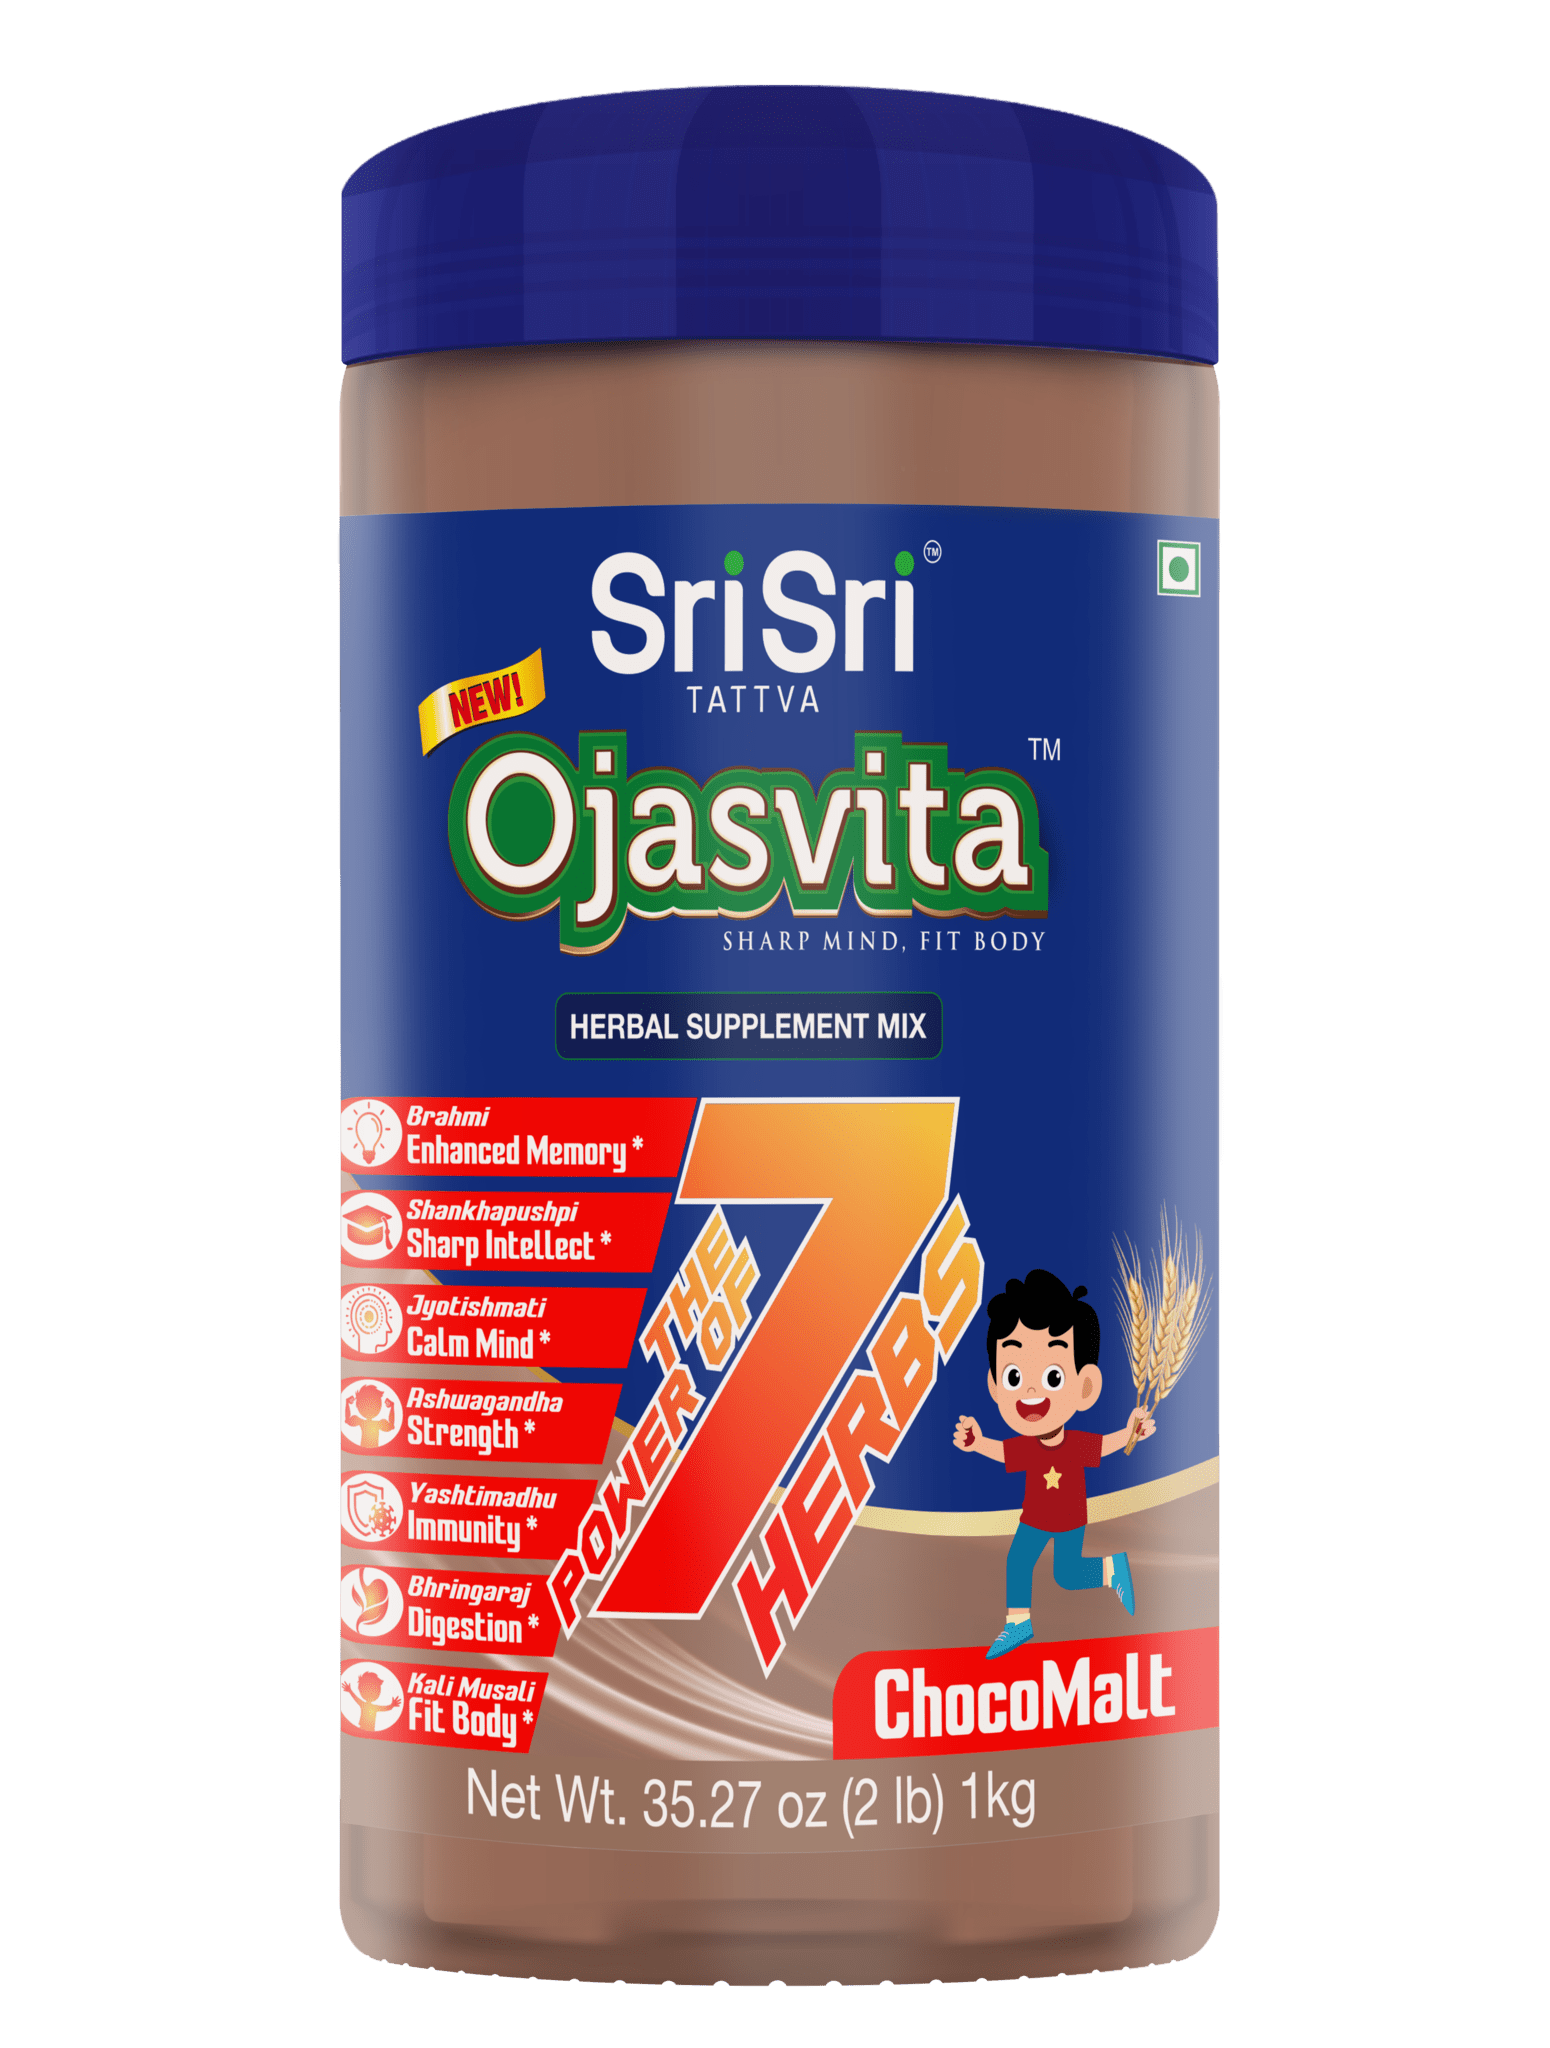 Sri Sri Tattva Herbs Ojasvita ChocoMalt 1Kg - Power of 7 Herbs